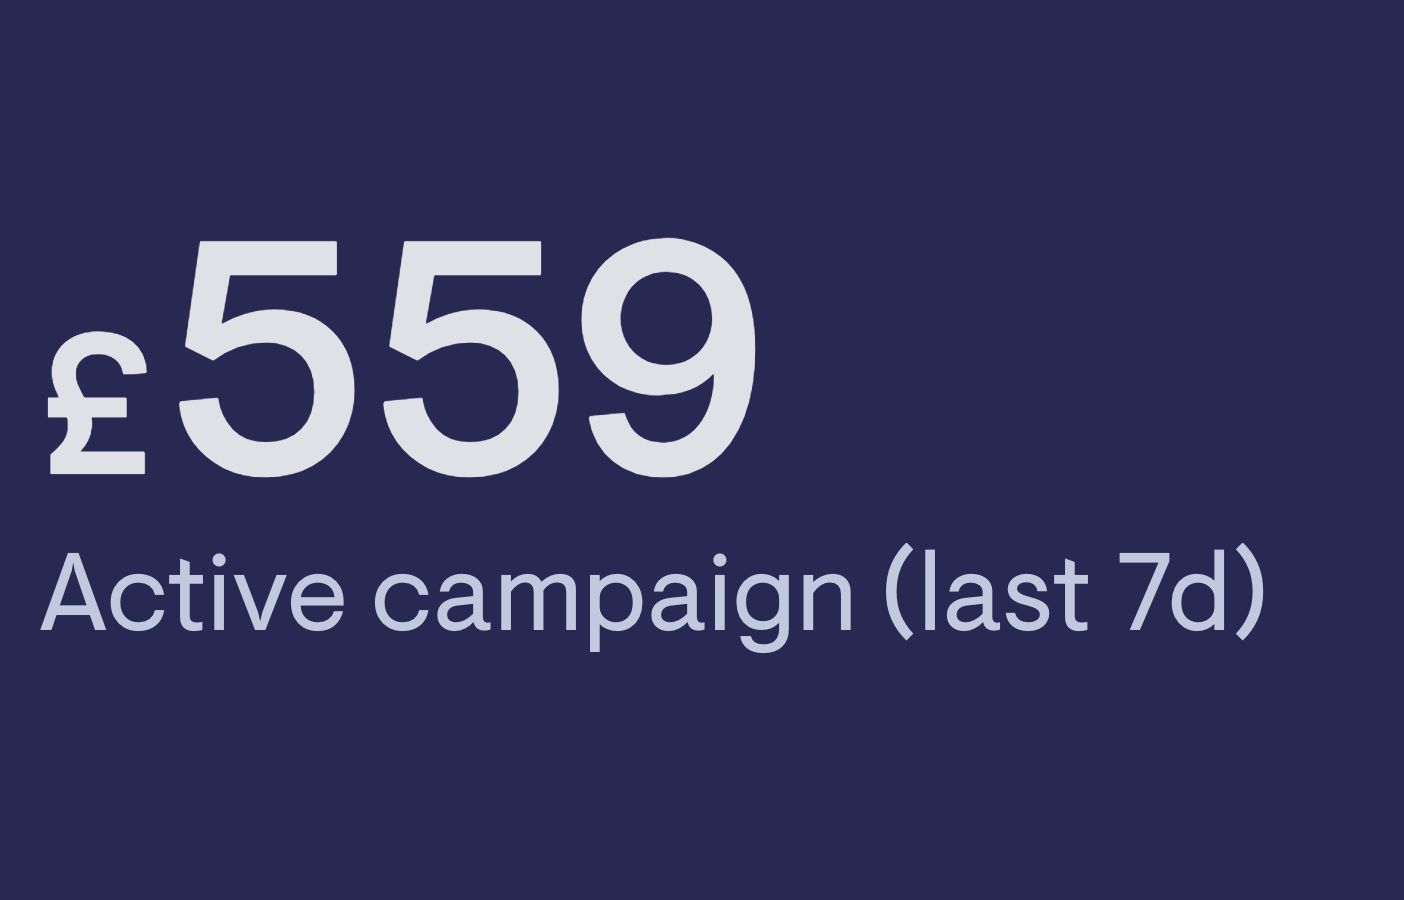 Campaign spend